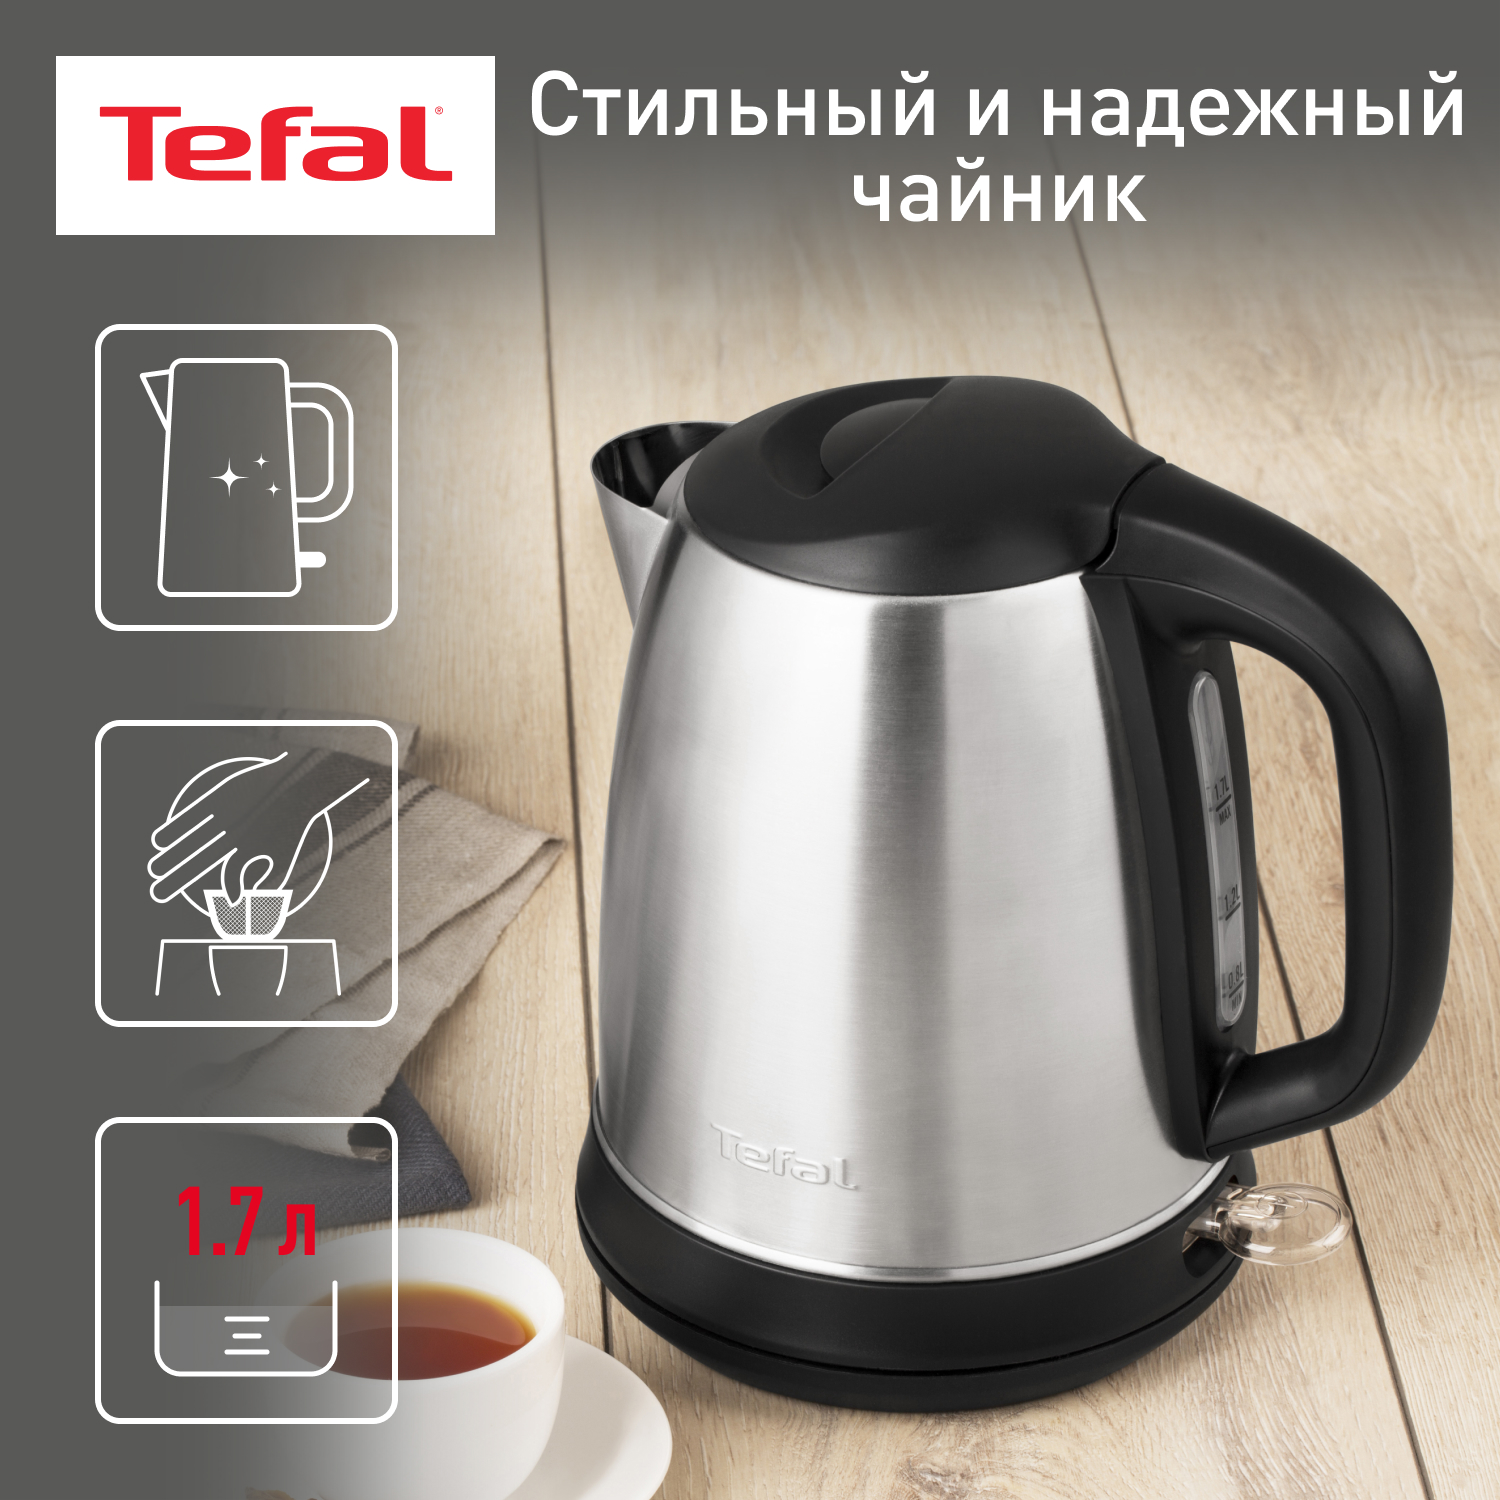 Чайник электрический Tefal Confidence KI270D30, 1.7 л, серебристый/черный электрический чайник confidence ki270d30